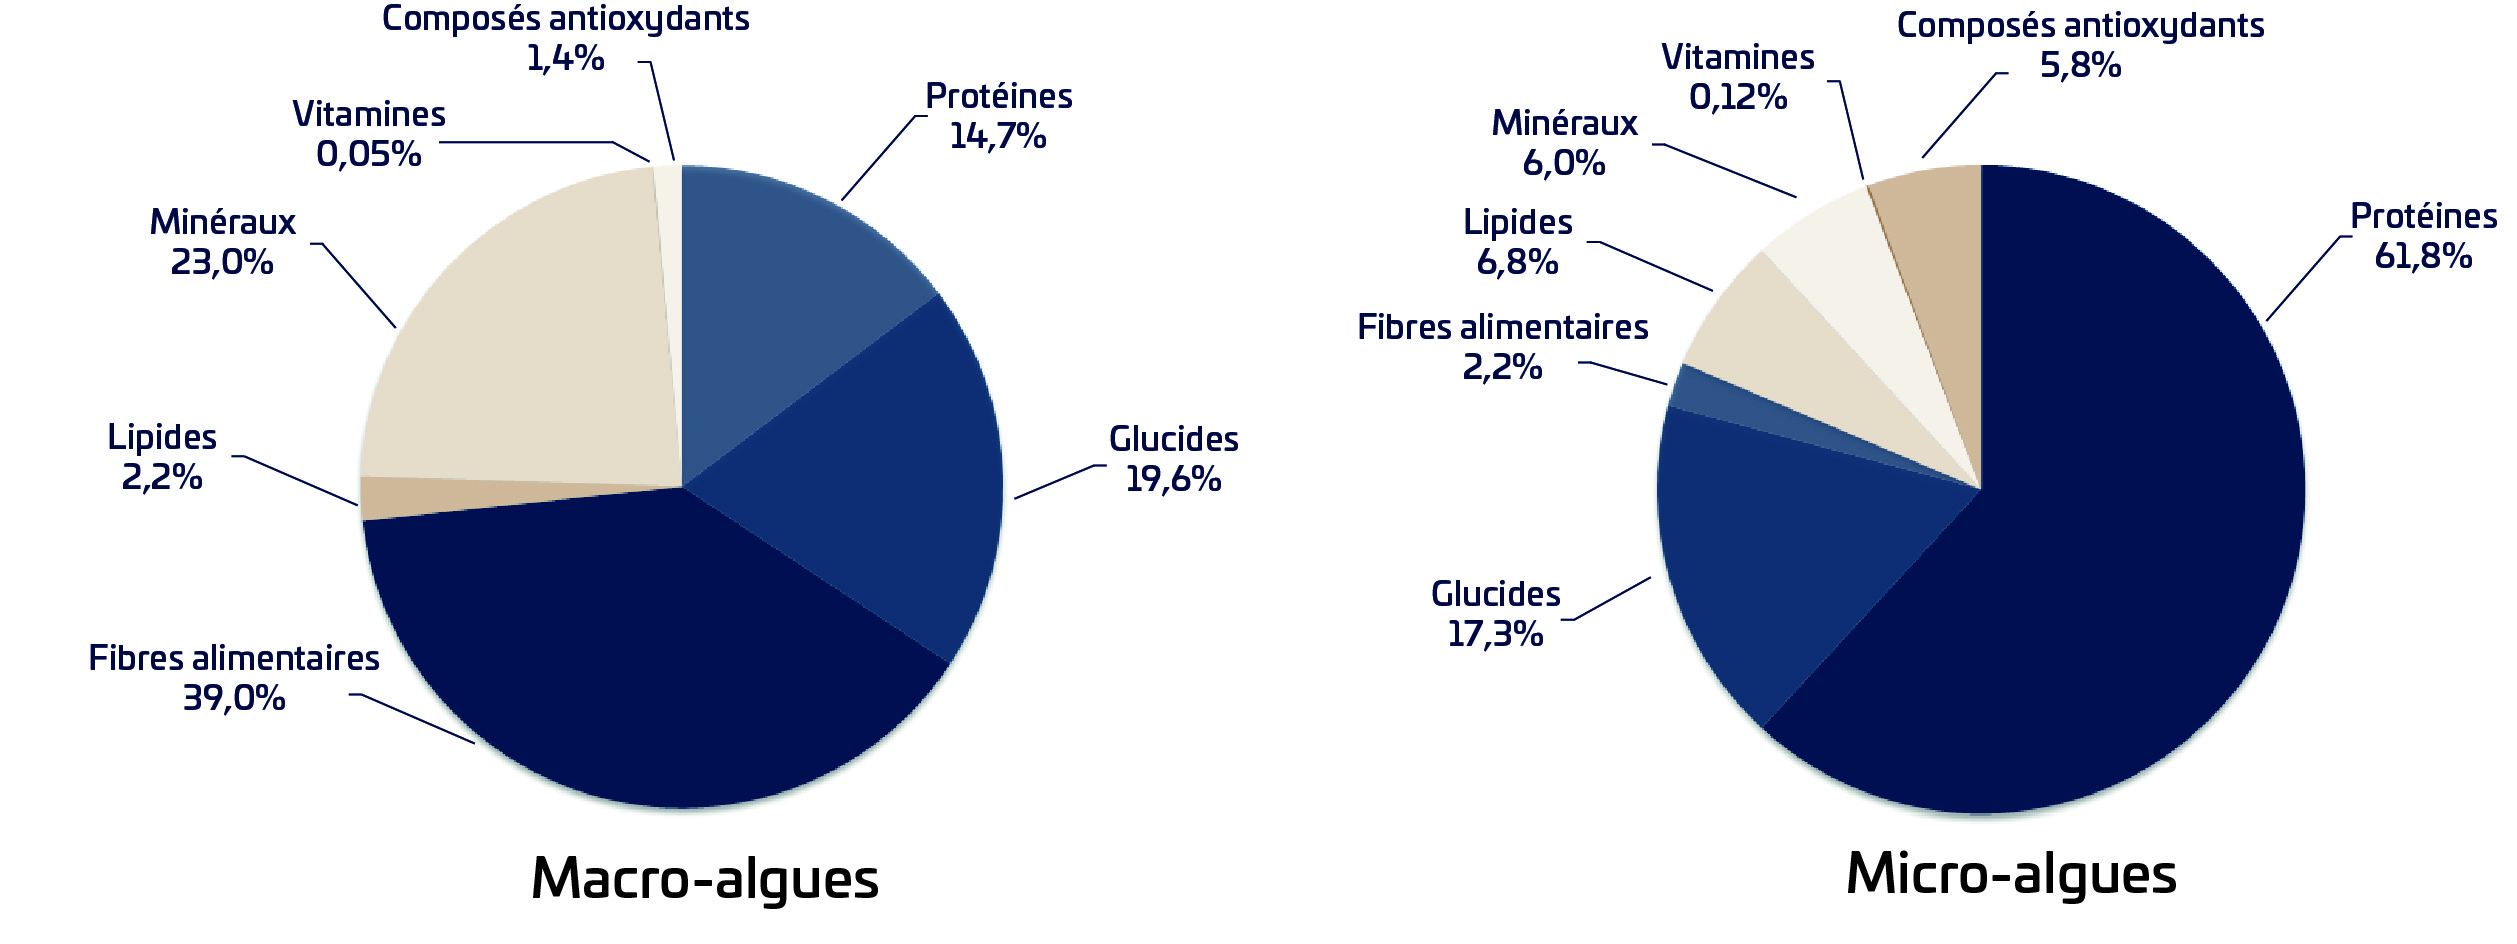 Représentation graphique de la composition nutritionnelle des macro-algues et des micro-algues